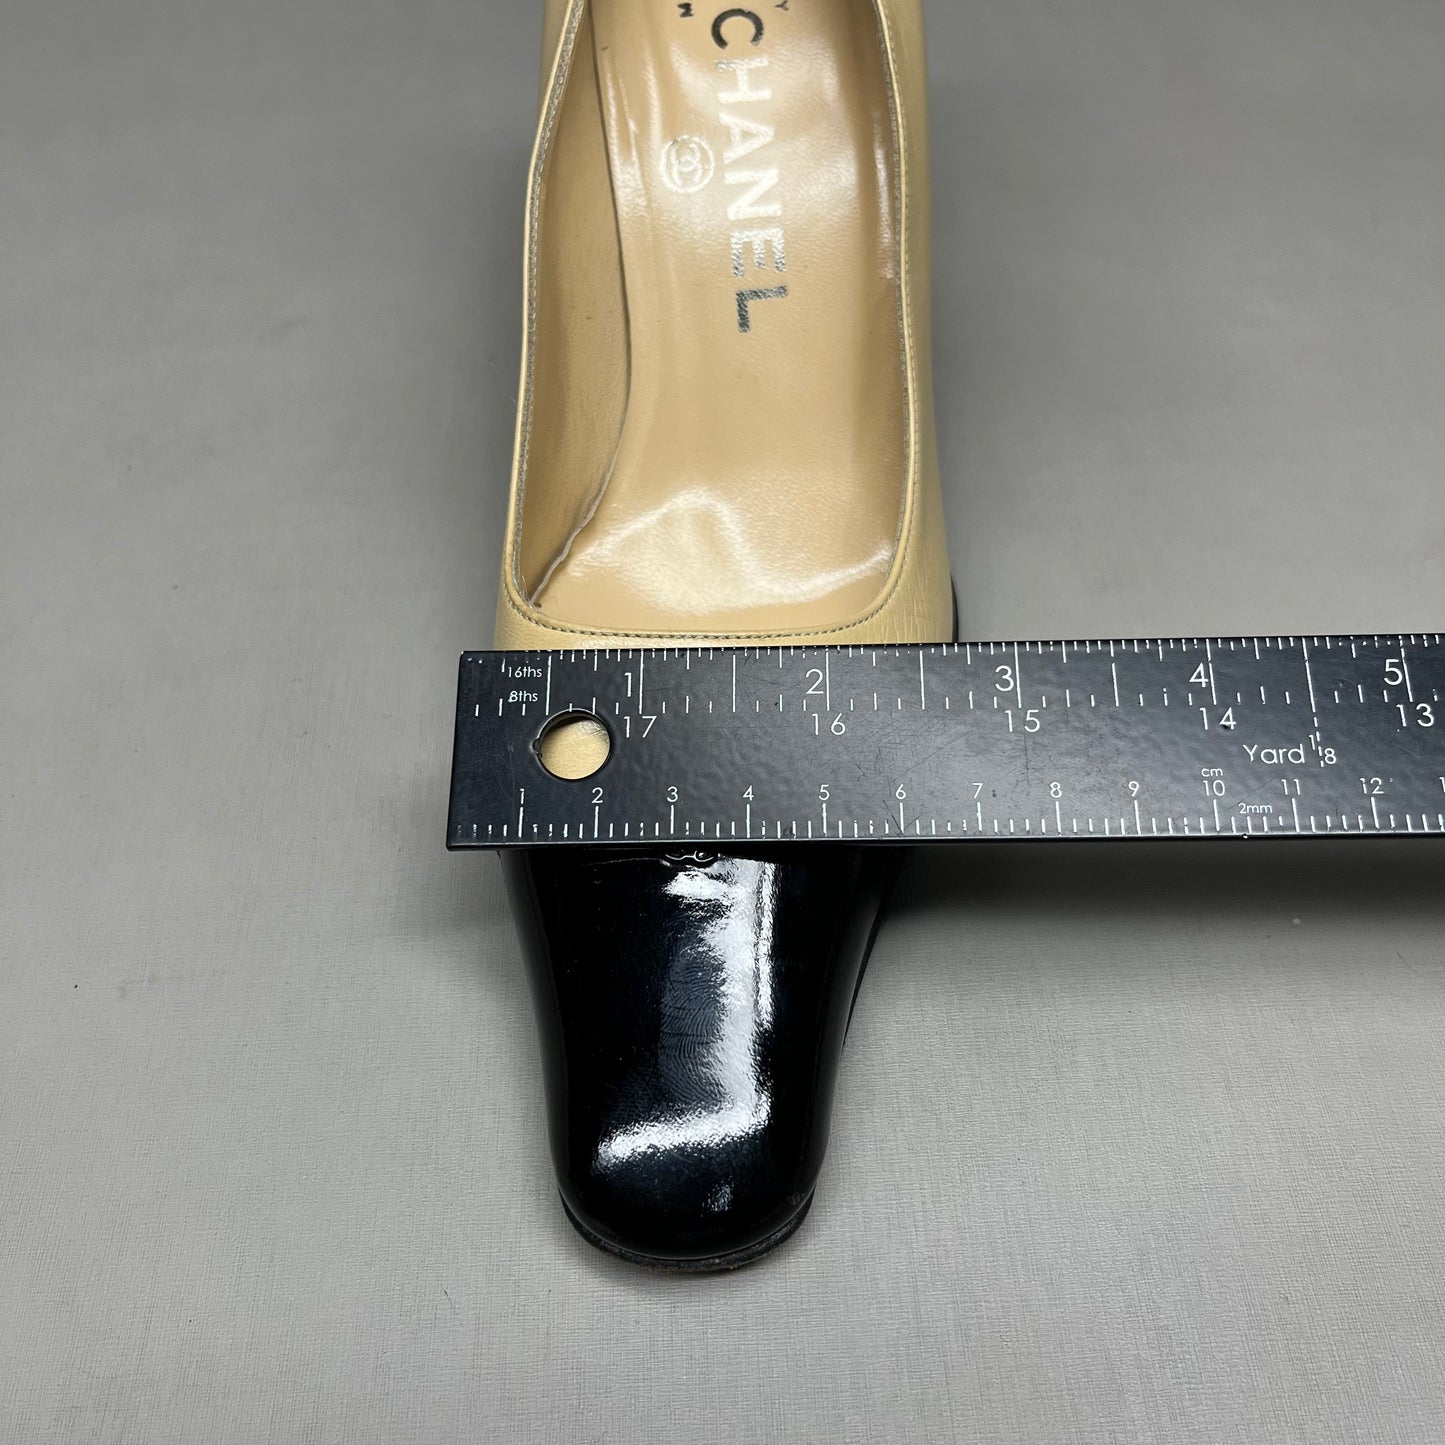 CHANEL Women's Vintage Court Pumps Black Woven Toe Sz 35/5 Tan (Pre-Owned)